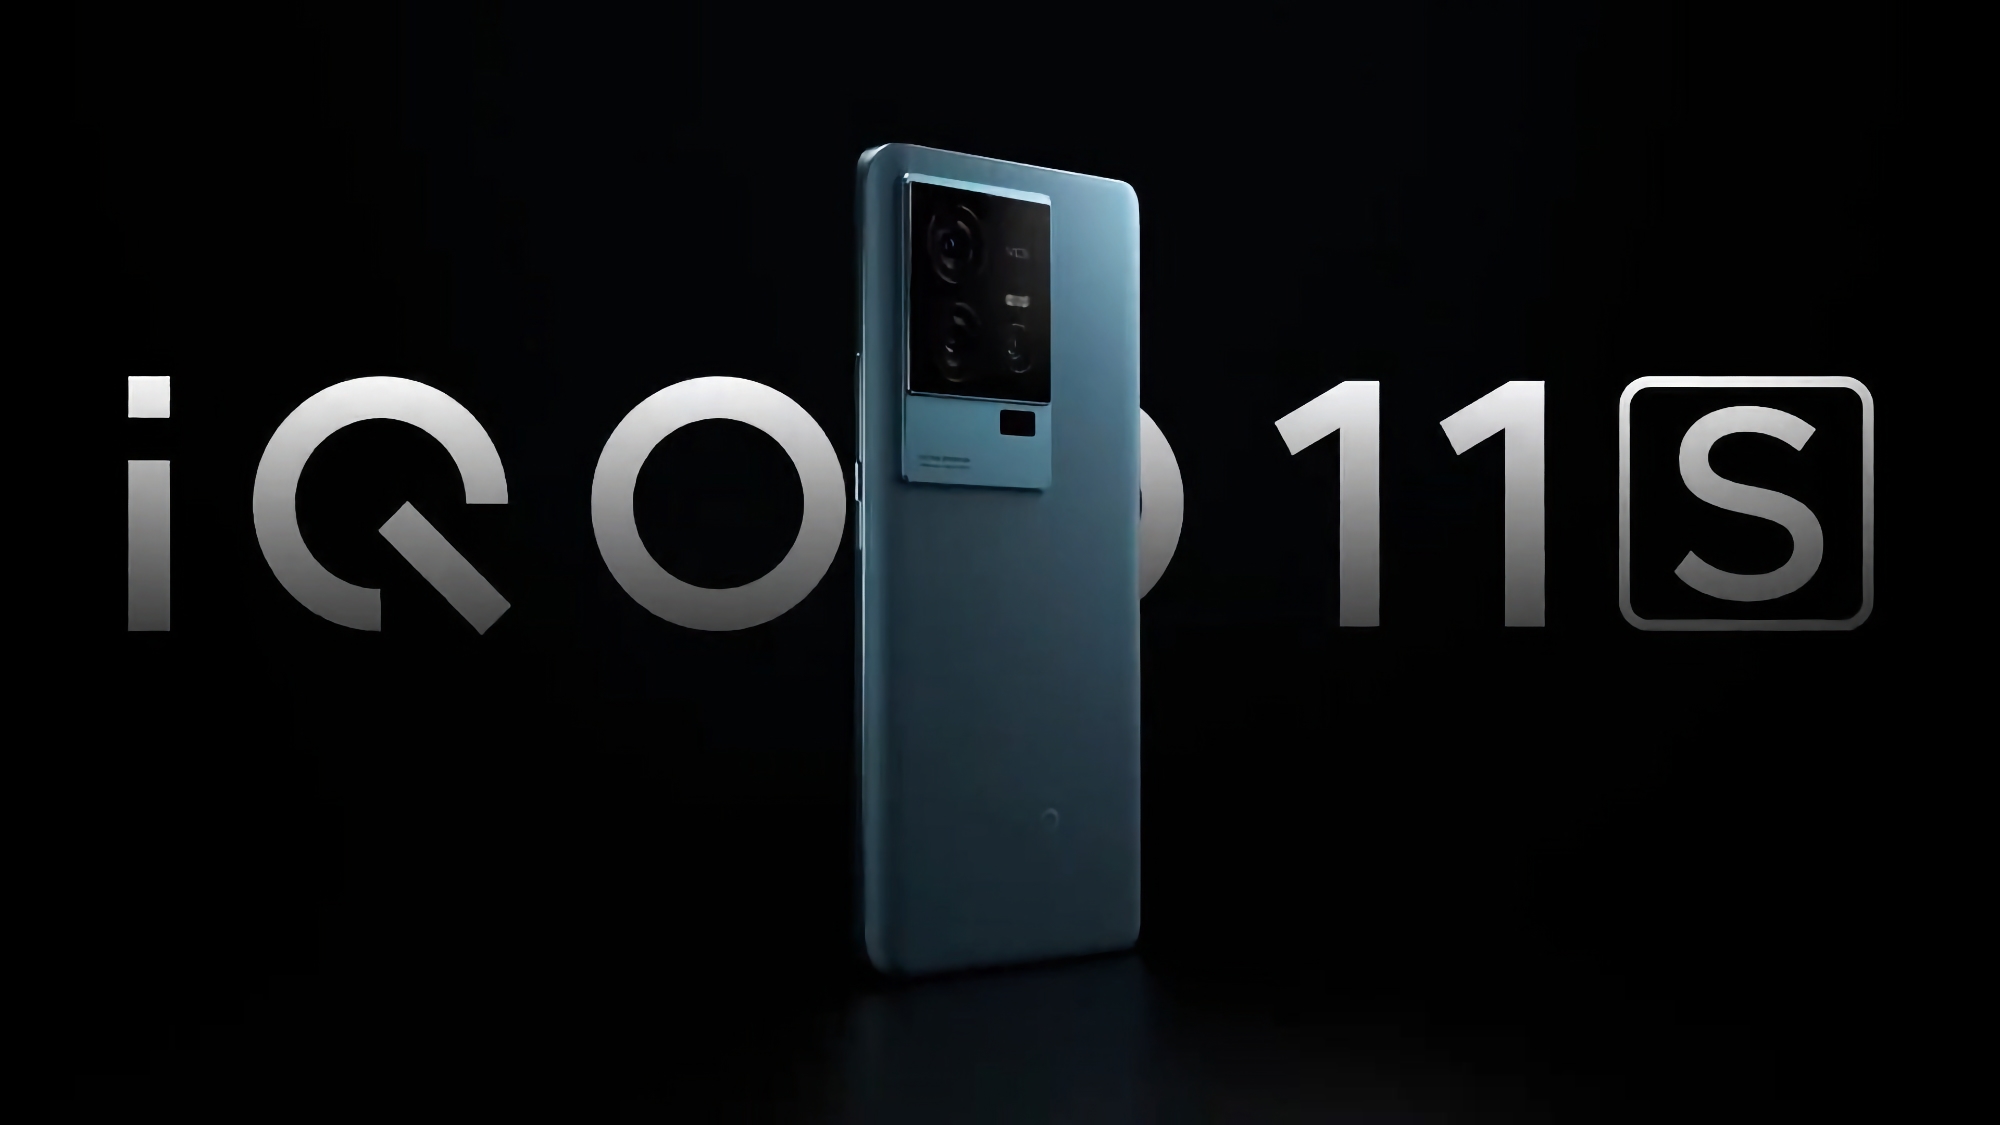 Det er officielt: vivo afslører iQOO 11s med Snapdragon 8 Gen 2-chip ved lanceringen den 4. juli